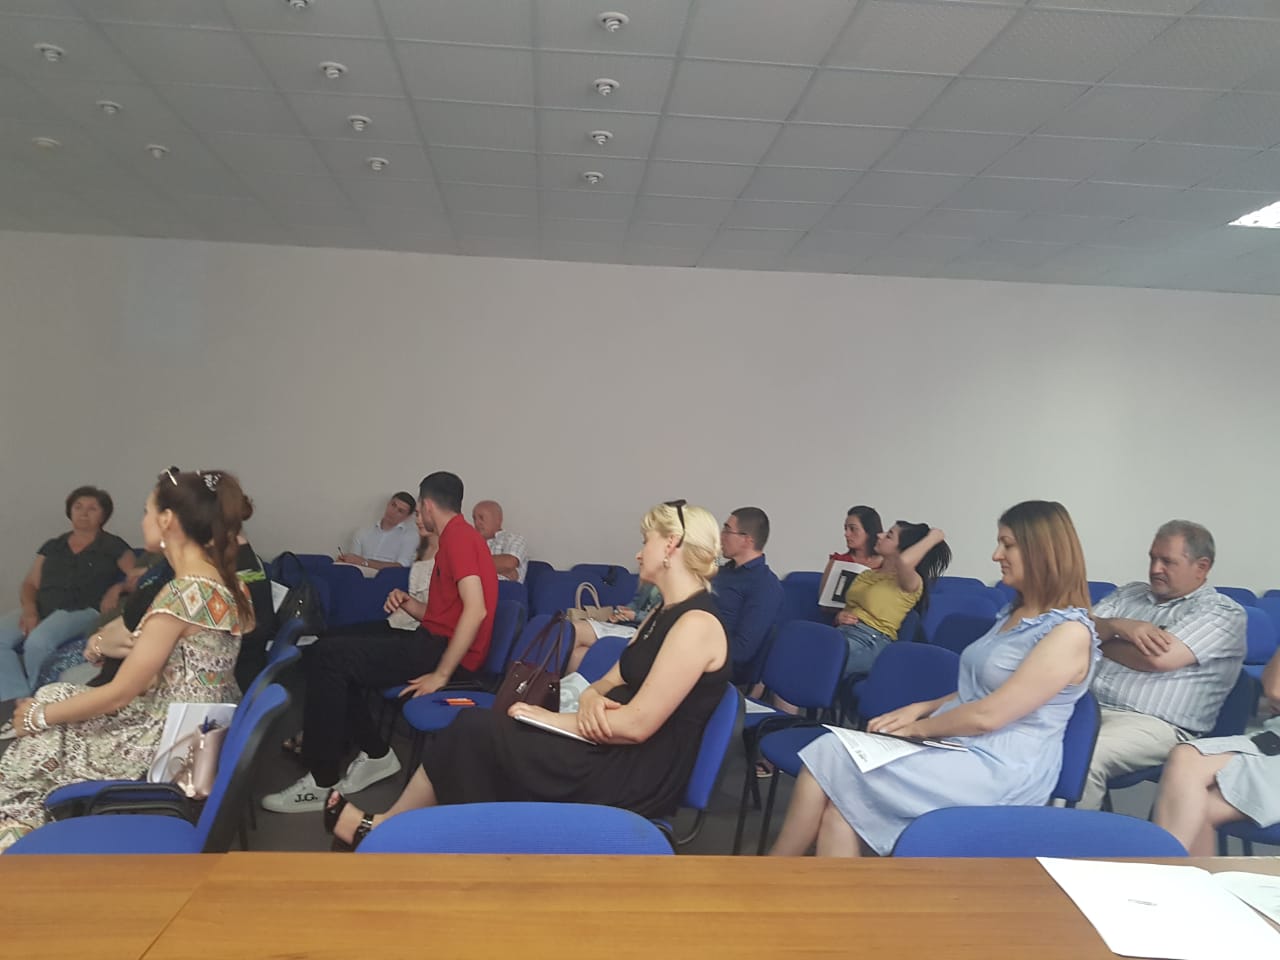 28 июня 2019 года Центром поддержки экспорта Республики Северная Осетия-Алания организован и проведен семинар «Эффективная деловая коммуникация для экспортеров»  образовательной программы Российского экспортного центра.